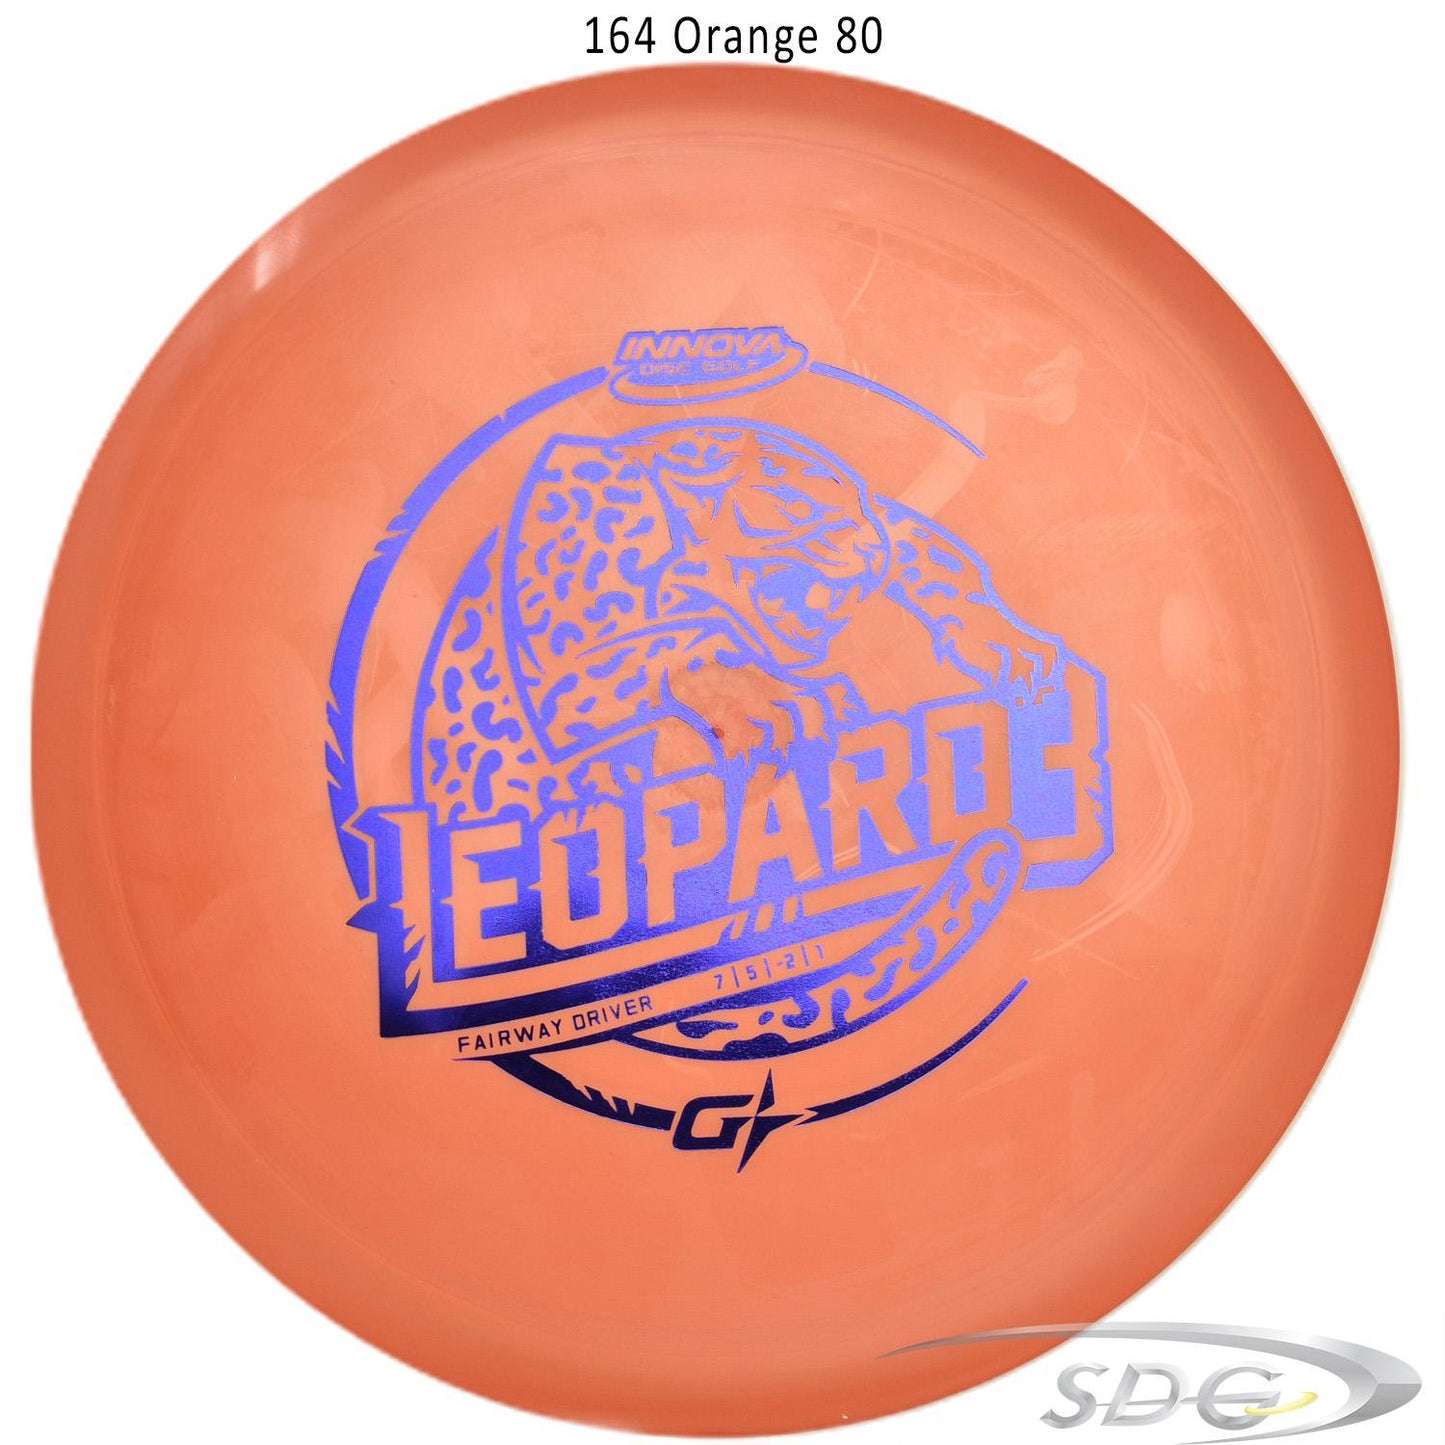 innova-gstar-leopard3-disc-golf-fairway-driver 164 Orange 80 